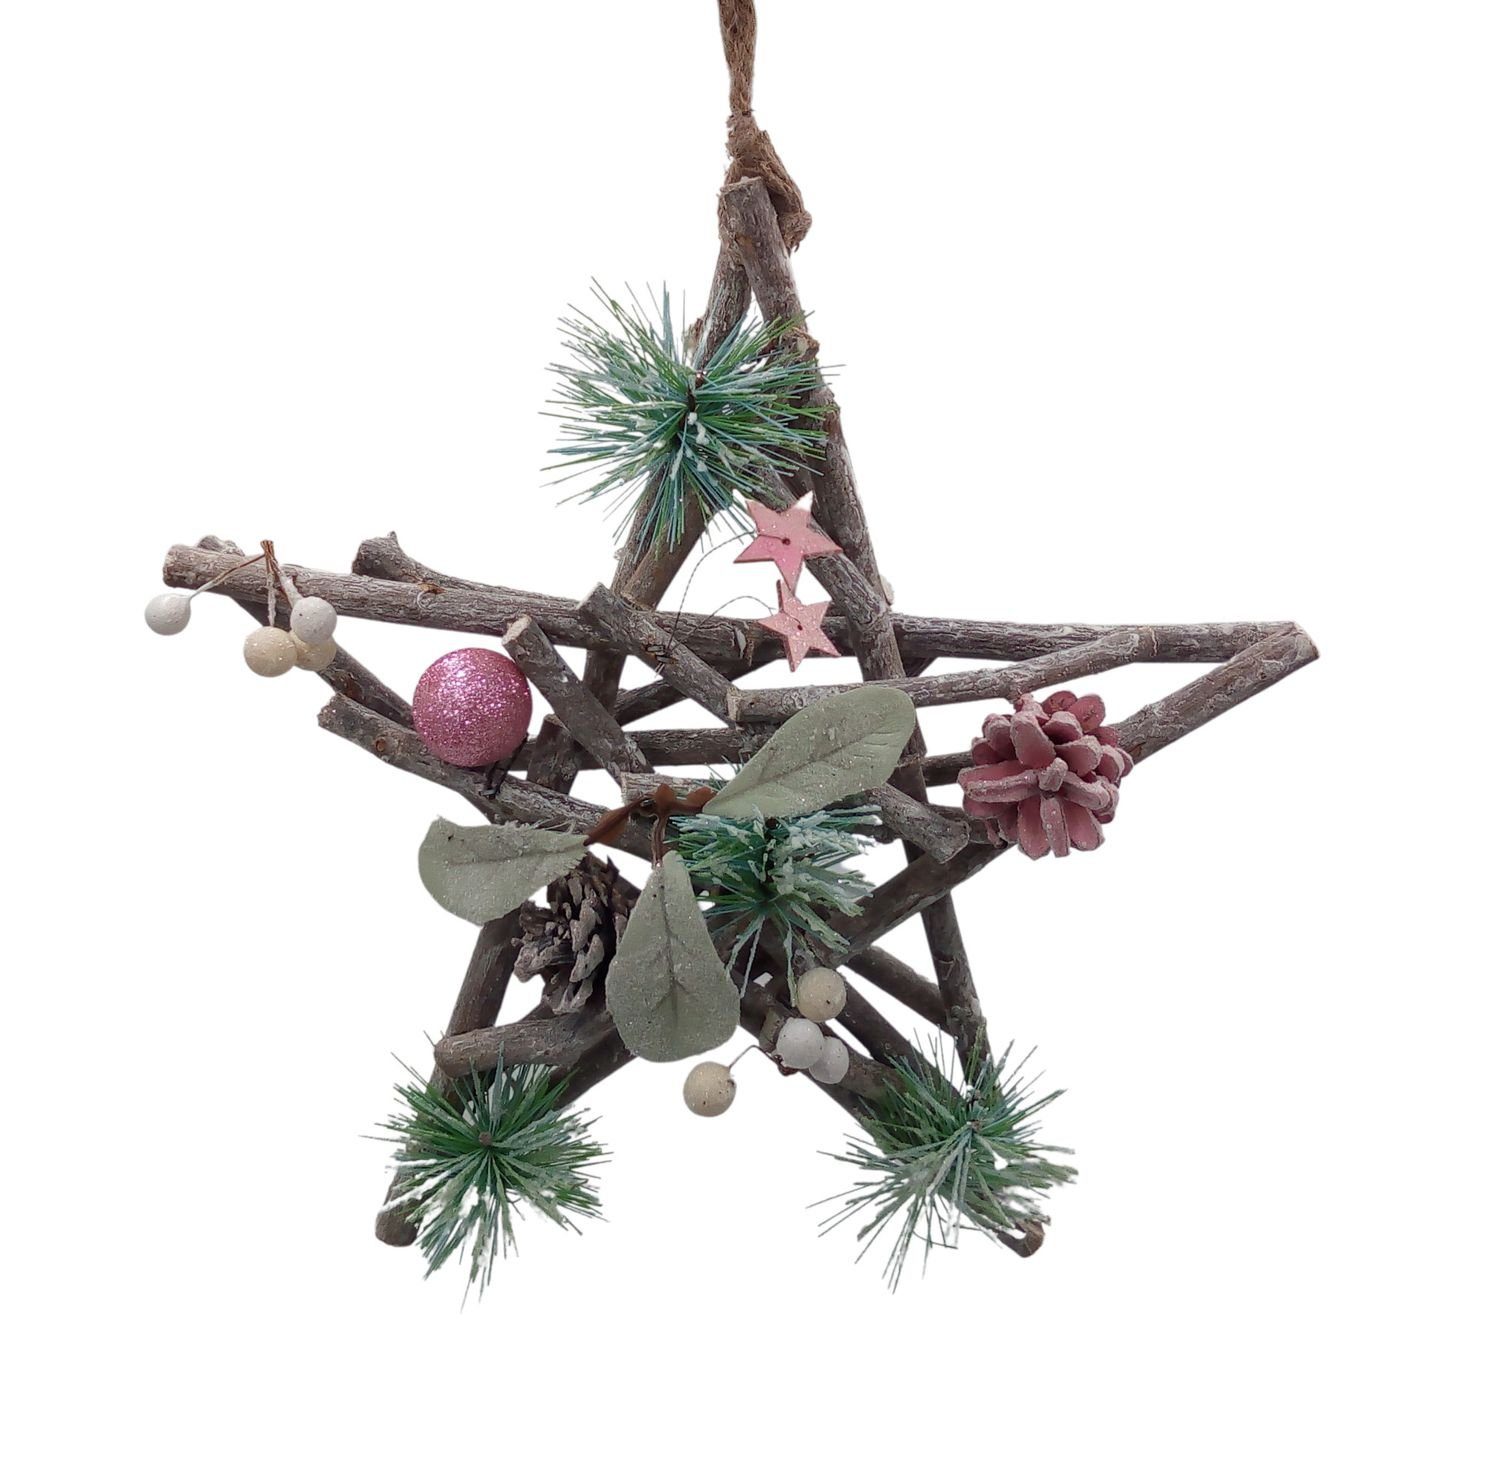 Dekostern Deko-Holzstern Weide weihnachtlich BURI geschmückt aus 30cm